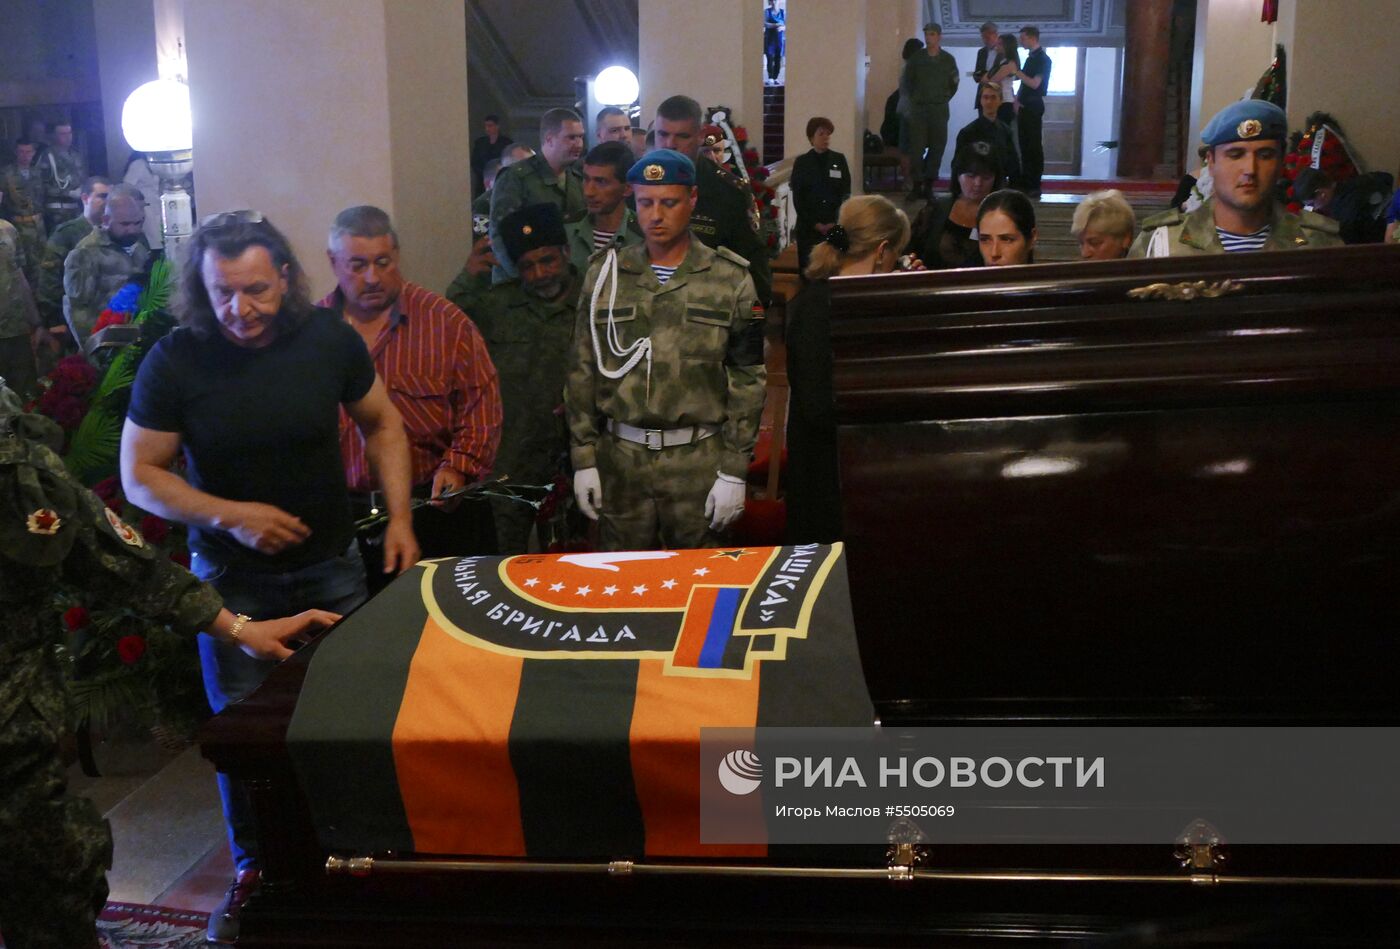 Прощание с командиром батальона "Пятнашка" О. Мамиевым в Донецке